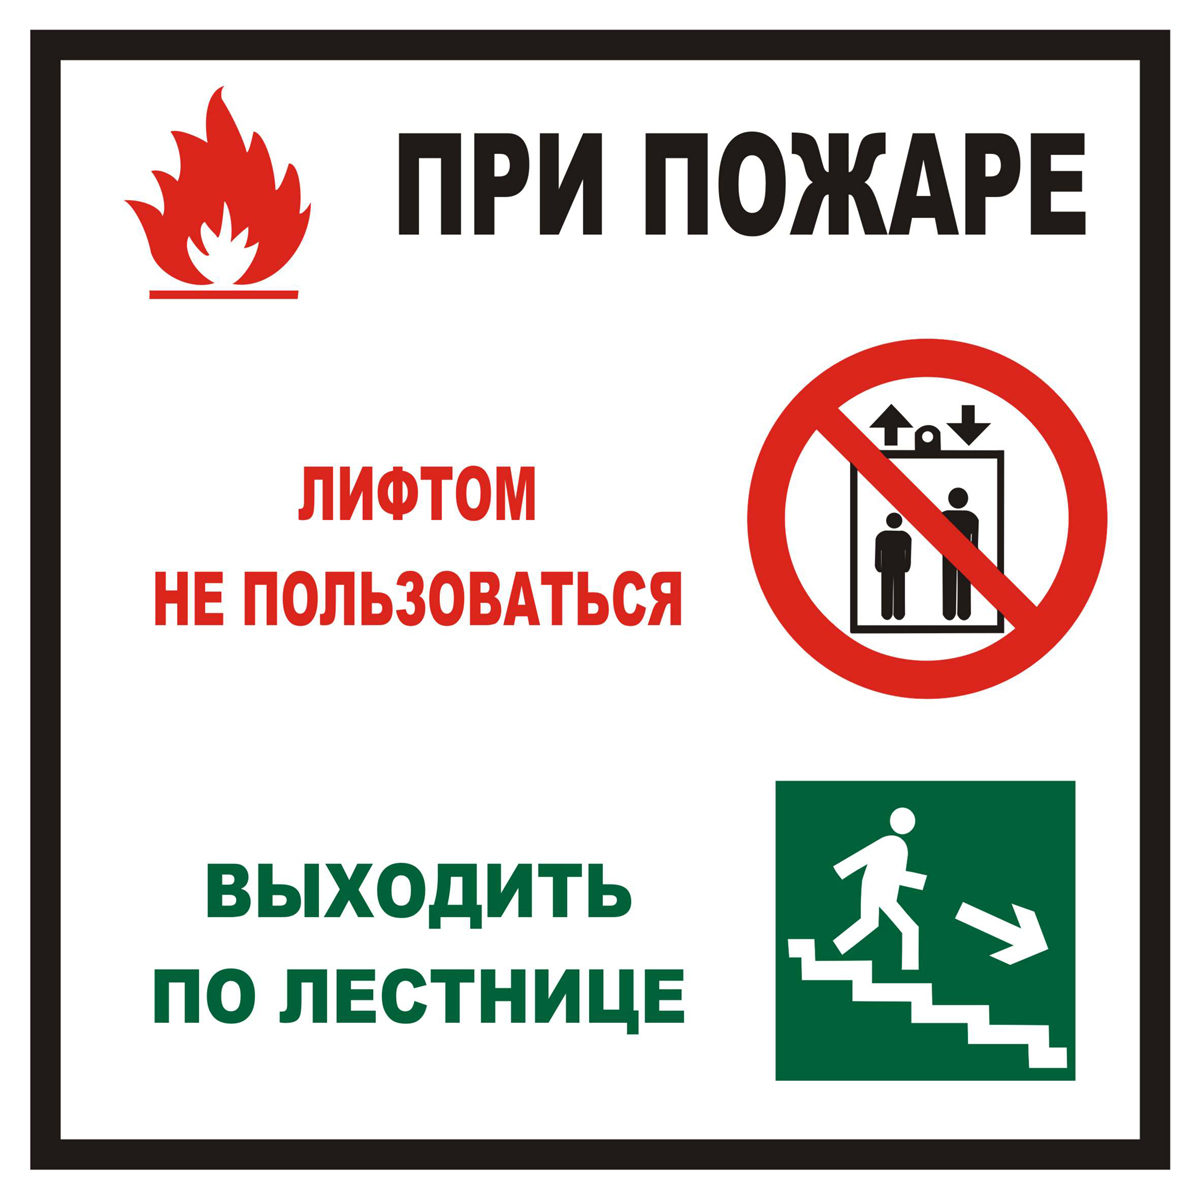 Знак T999K При пожаре лифтом не пользоваться, выходить по лестнице (Пленка 200 х 200)